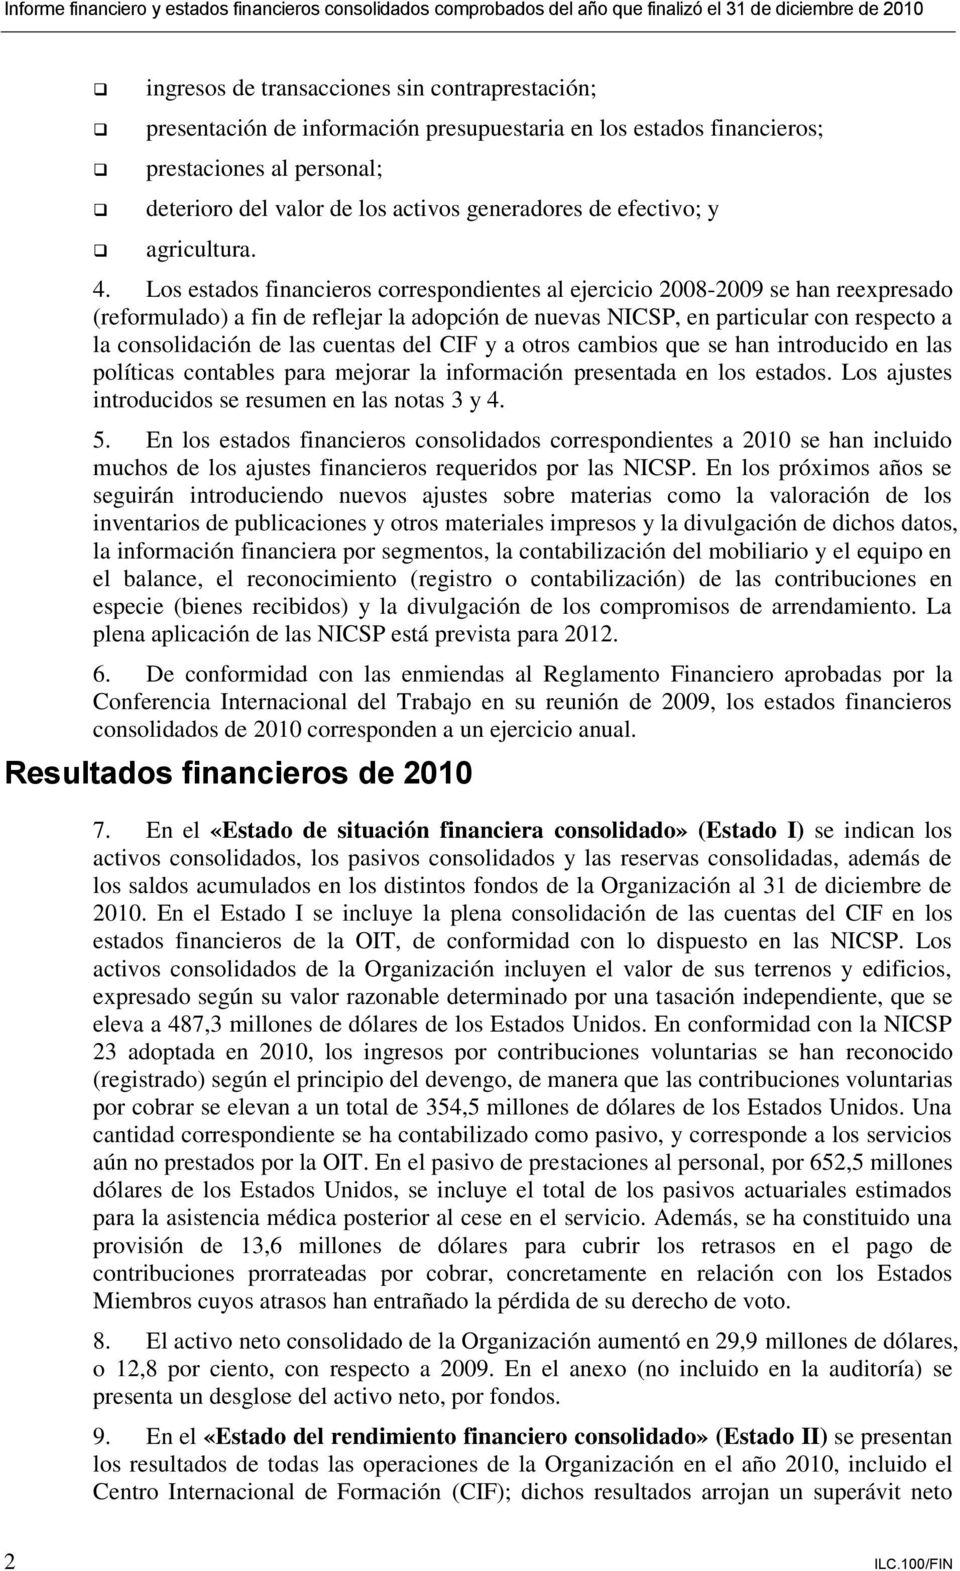 Los estados financieros correspondientes al ejercicio 2008-2009 se han reexpresado (reformulado) a fin de reflejar la adopción de nuevas NICSP, en particular con respecto a la consolidación de las